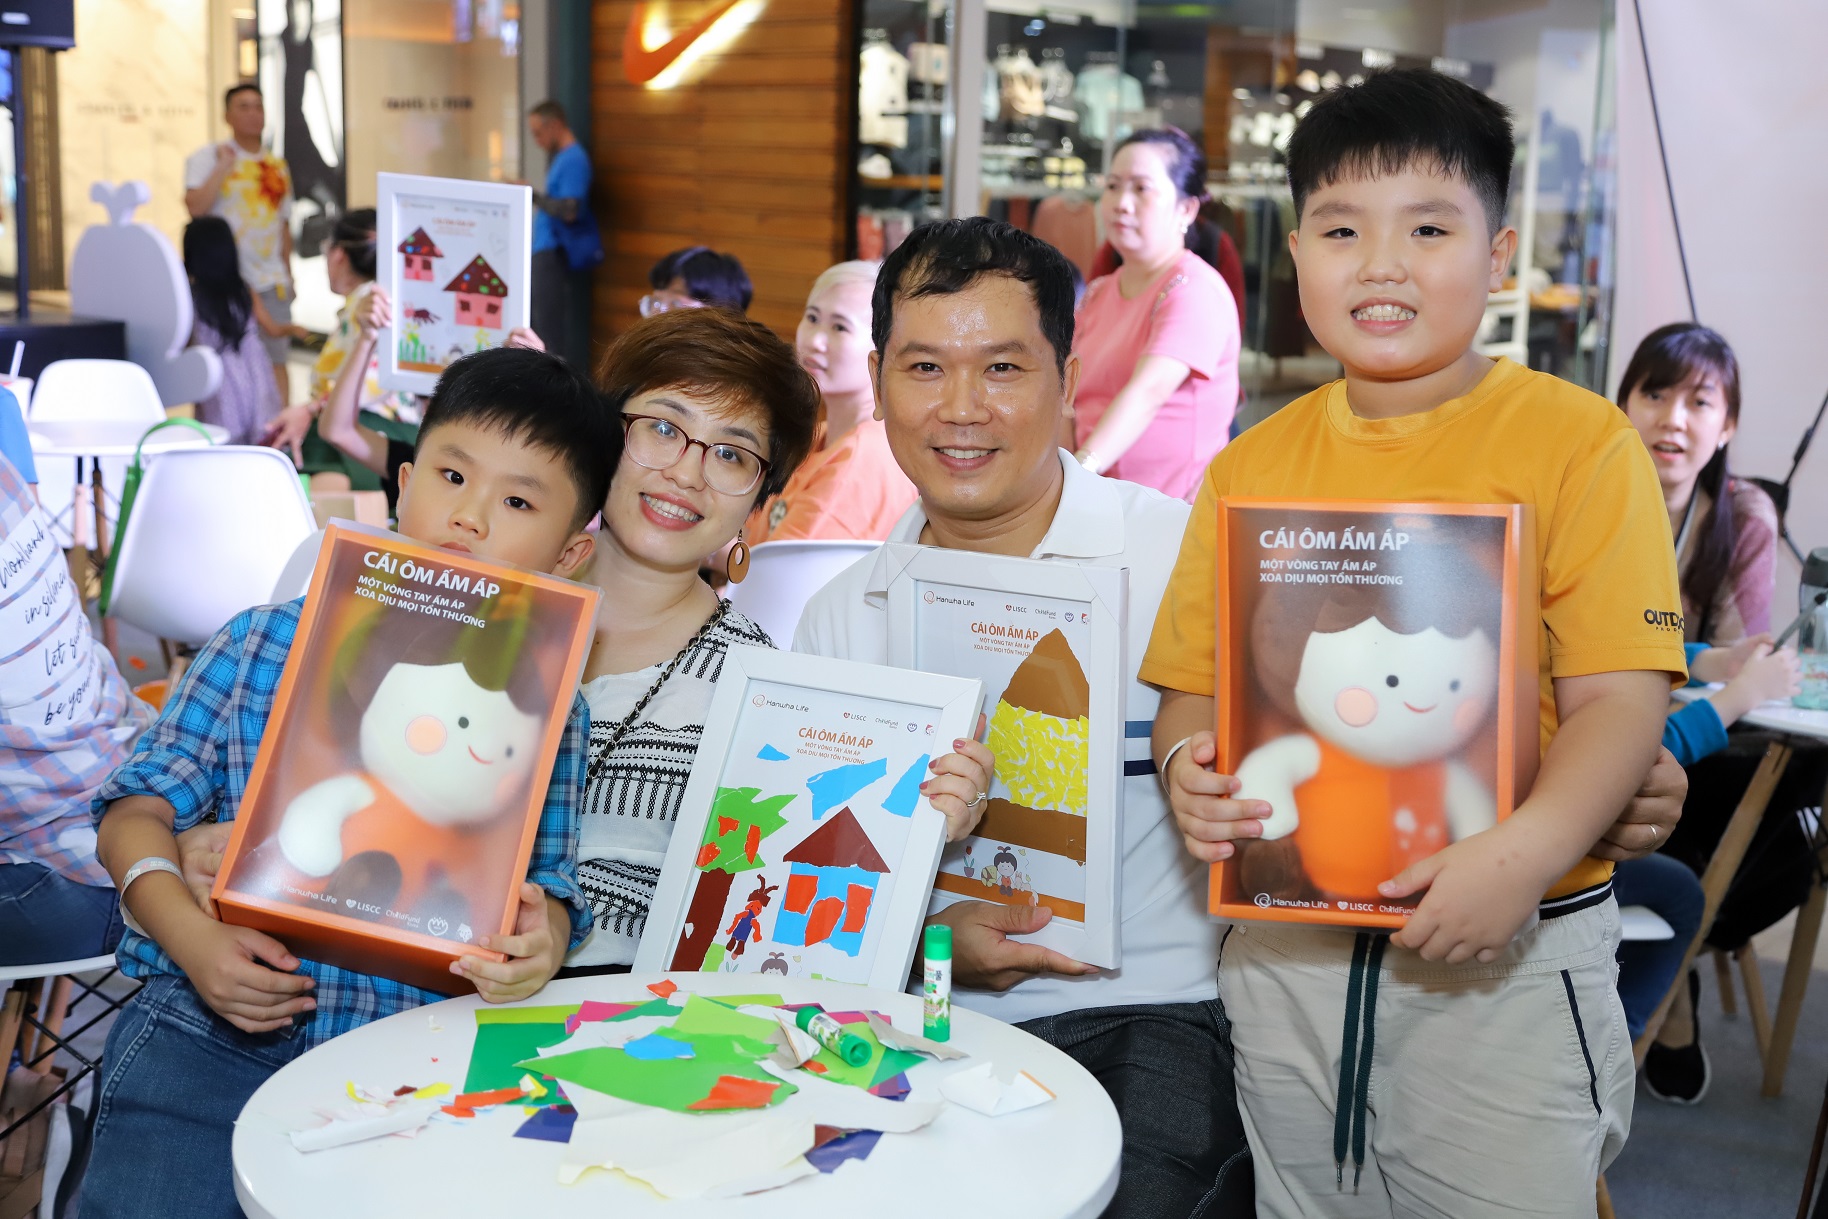 Ngày 7/10 qua, tại trung tâm thương mại Vạn Hạnh Mall, sự kiện “Cái ôm ấm áp” đã thu hút sự tham gia của hơn 400 gia đình. Sự kiện này nằm trong khuôn khổ dự án bảo vệ trẻ em “Cái ôm ấm áp” do Hanwha Life khởi xướng và tài trợ, với sự hợp tác triển khai của tổ chức ChildFund Hàn Quốc.